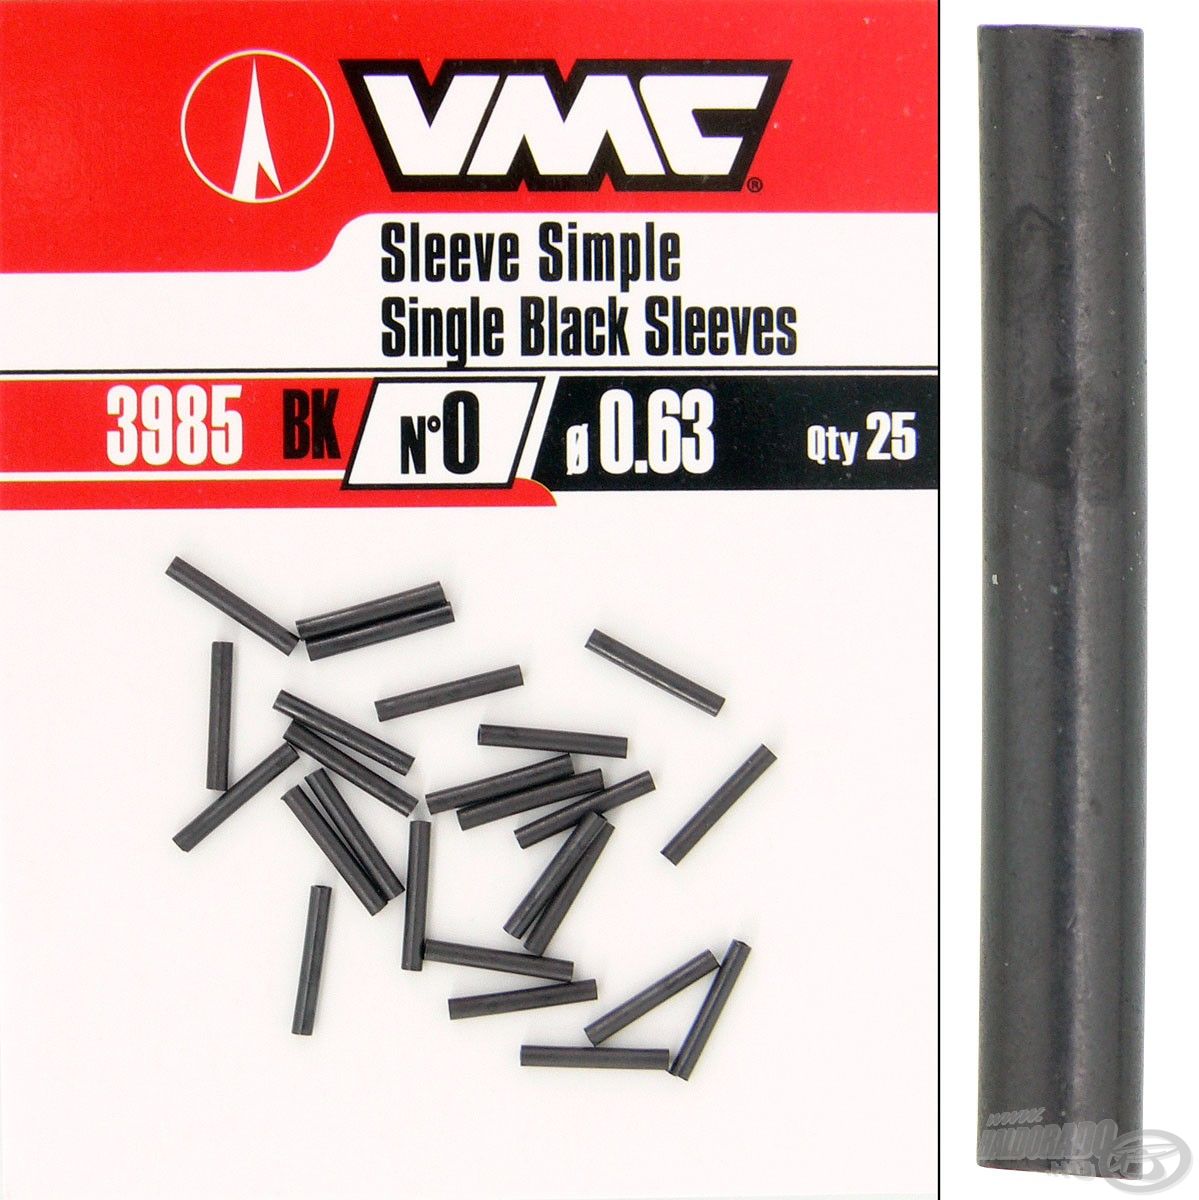  A VMC roppantócső jelenleg három különböző méretben érhető el a kínálatunkban. A legkisebb: 0,63 x 7,93 mm